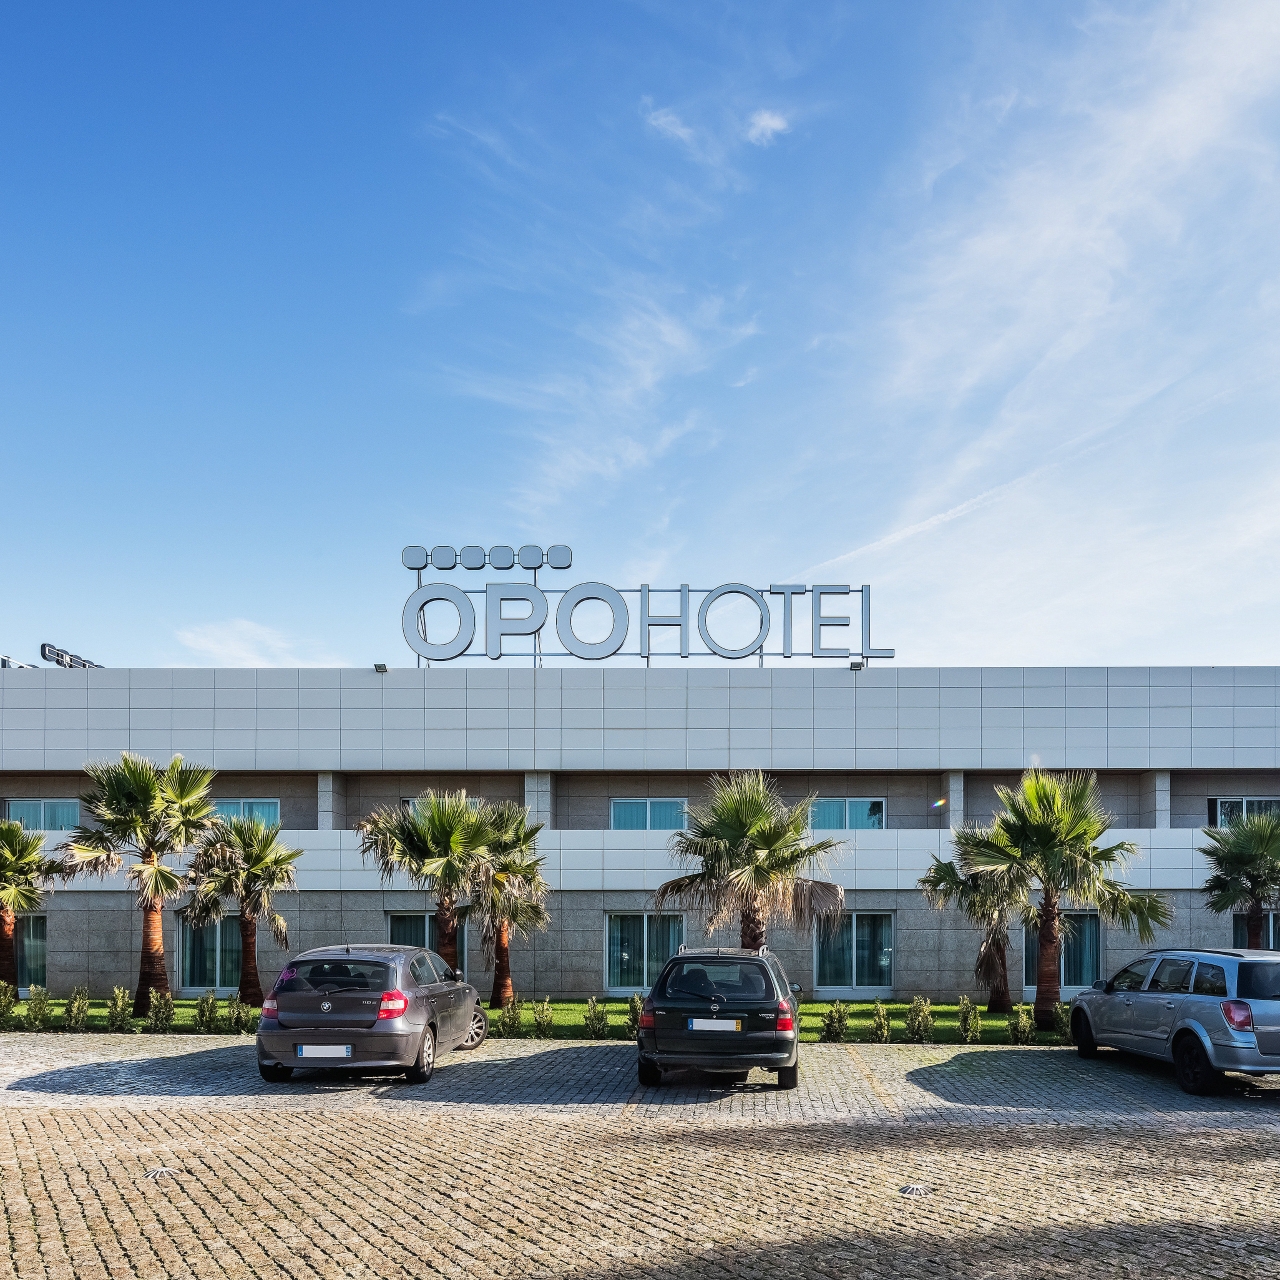 OPOHOTEL Porto Aeroporto - 4 HRS star hotel in Maia (Porto)